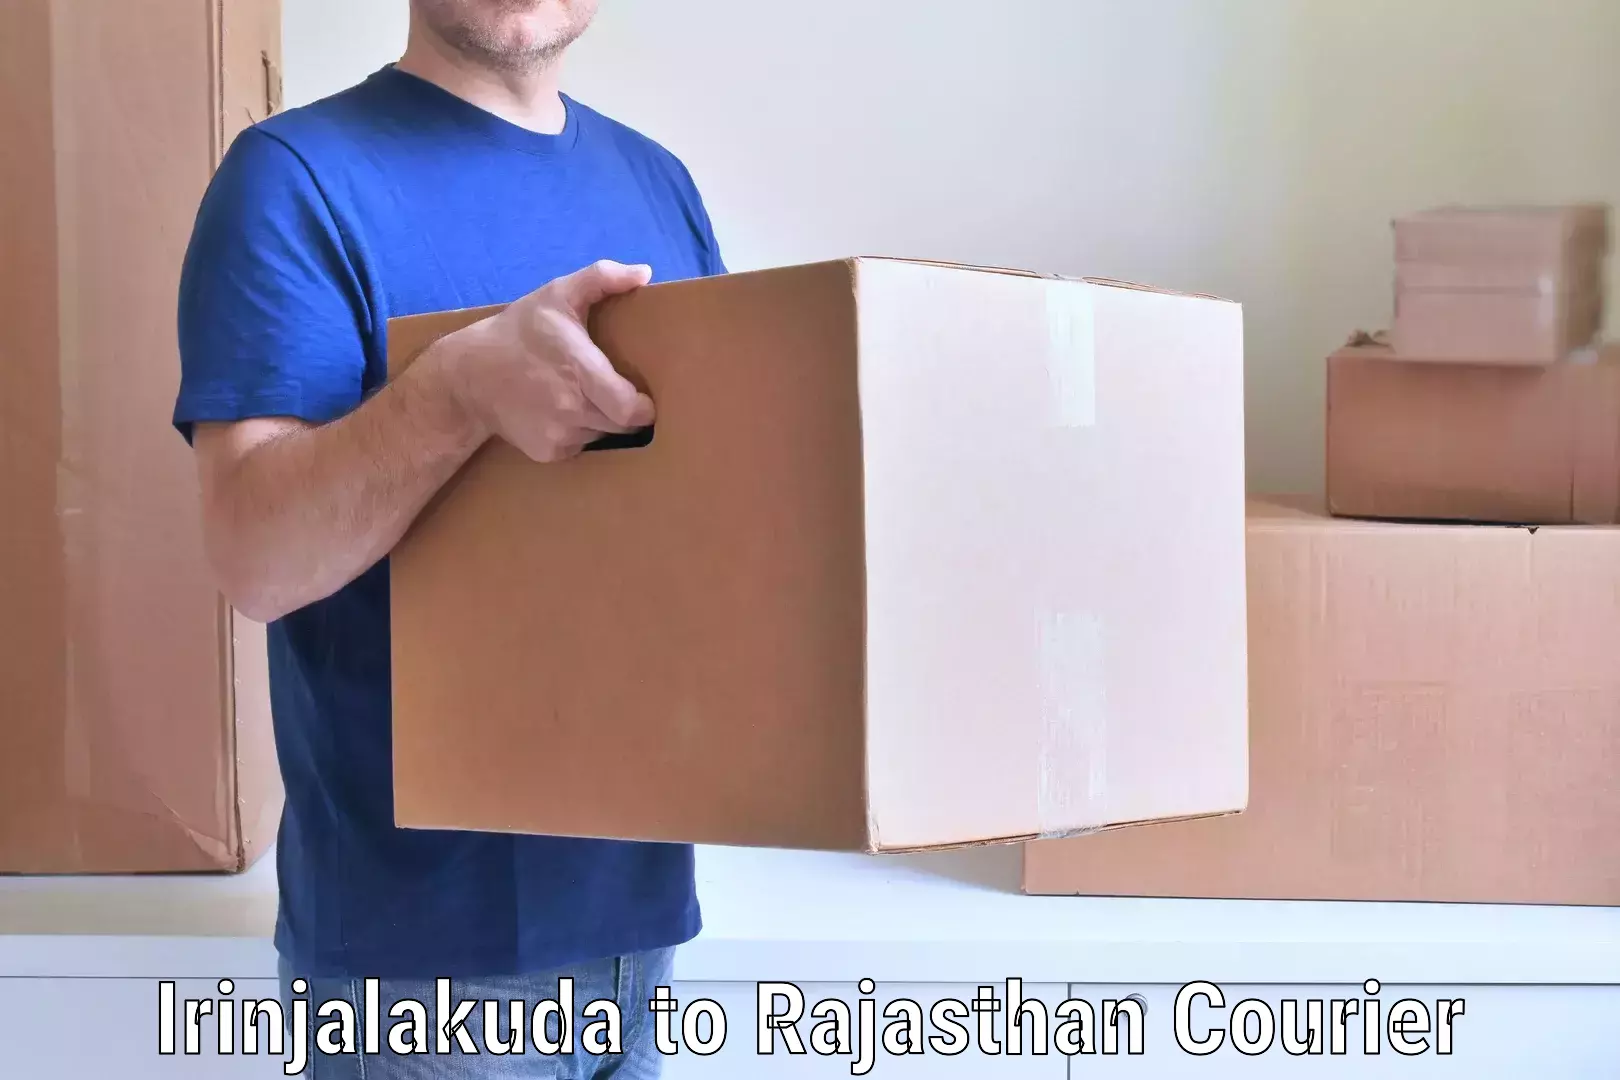 Full-service household moving in Irinjalakuda to Banswara